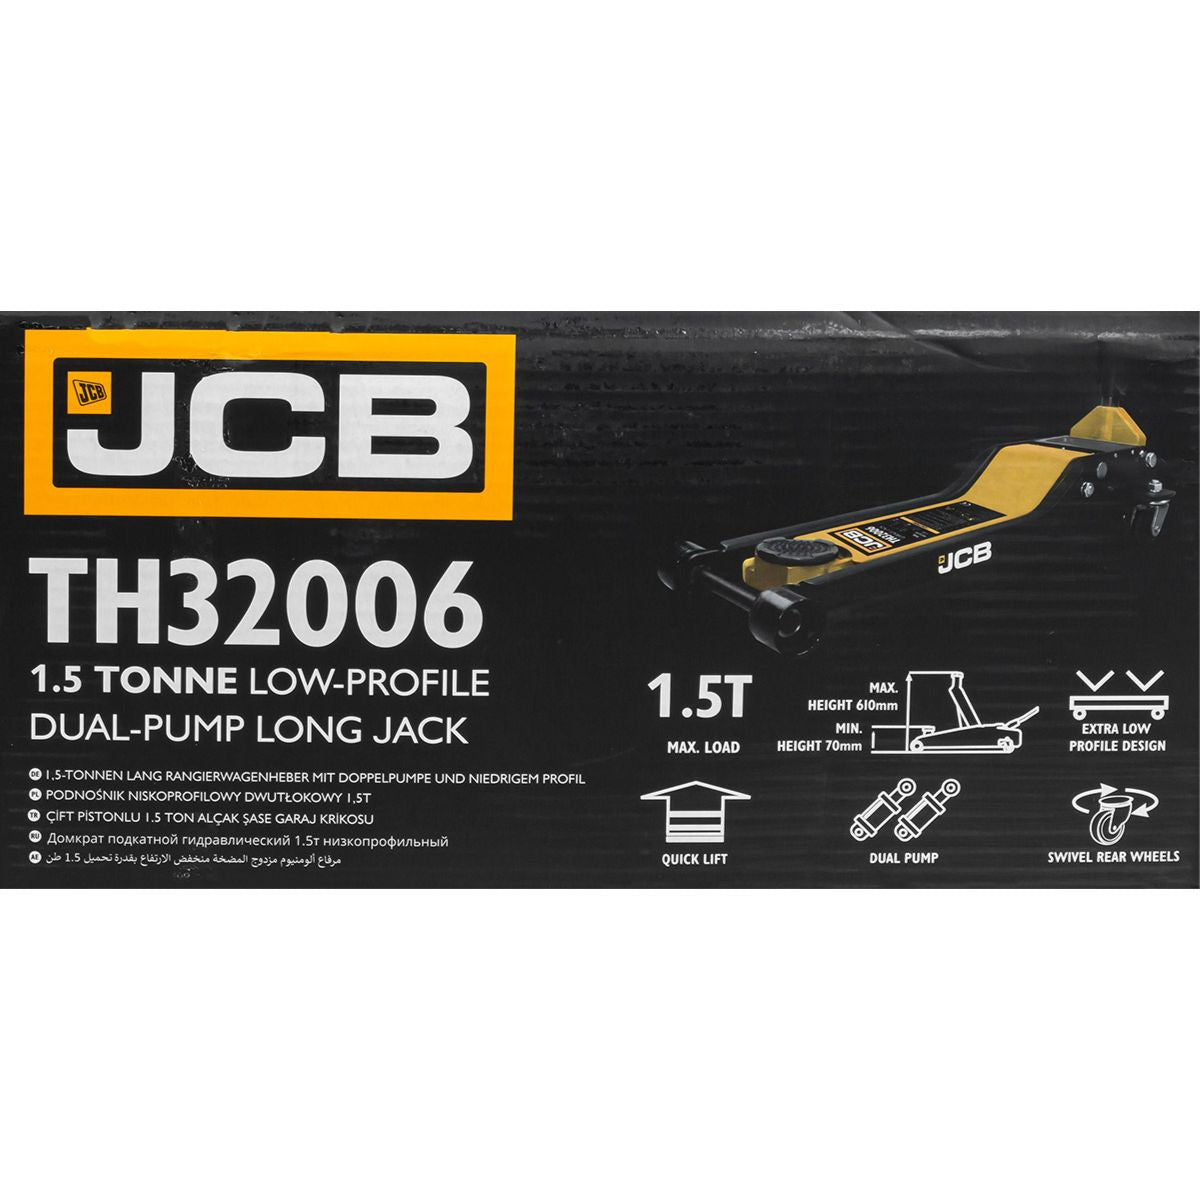 JCB TH32006 Pump Long Jack 2 Tonne